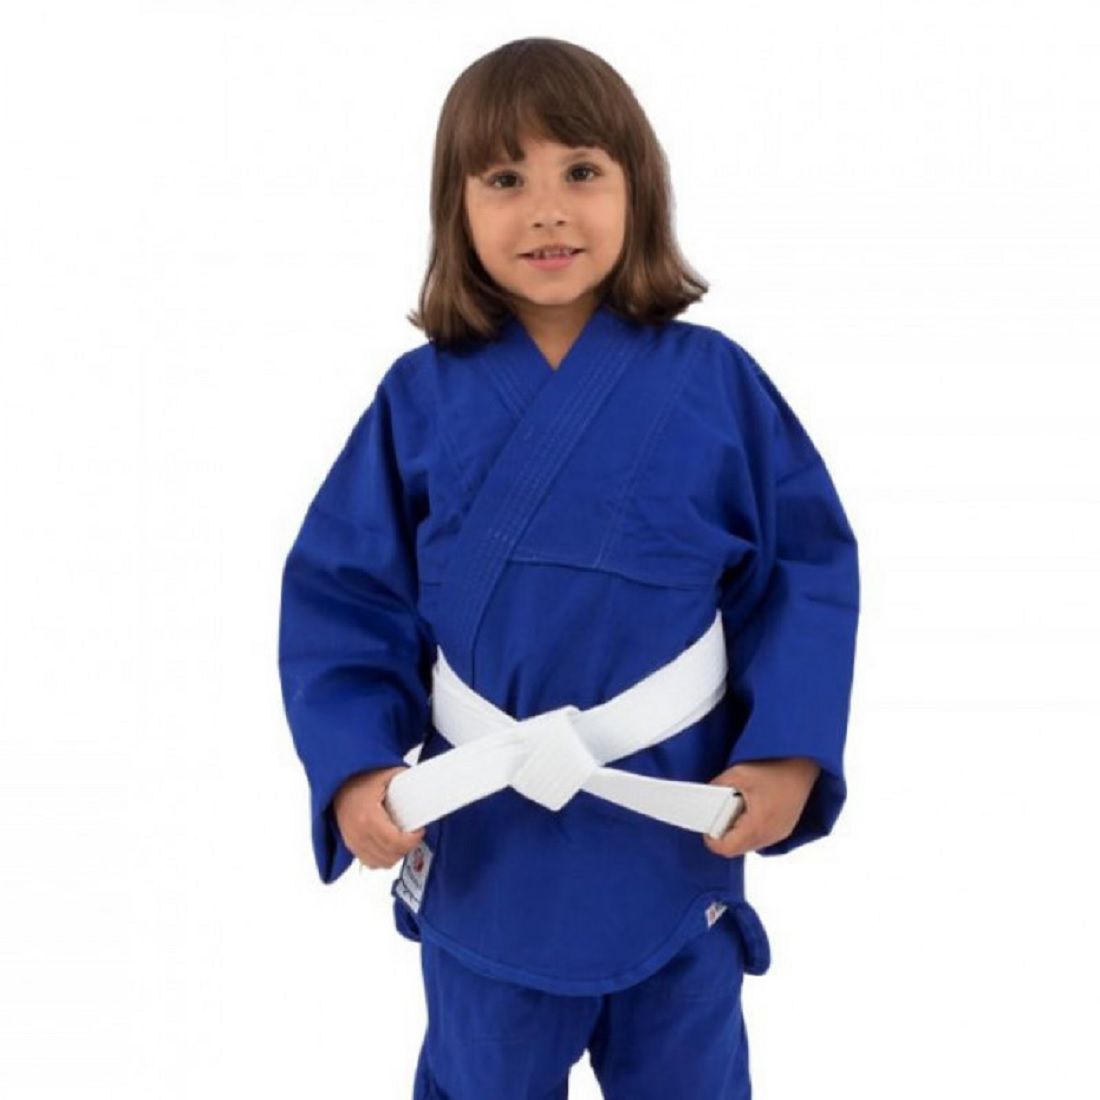 Kimono Judo Kids - Casa do Atleta